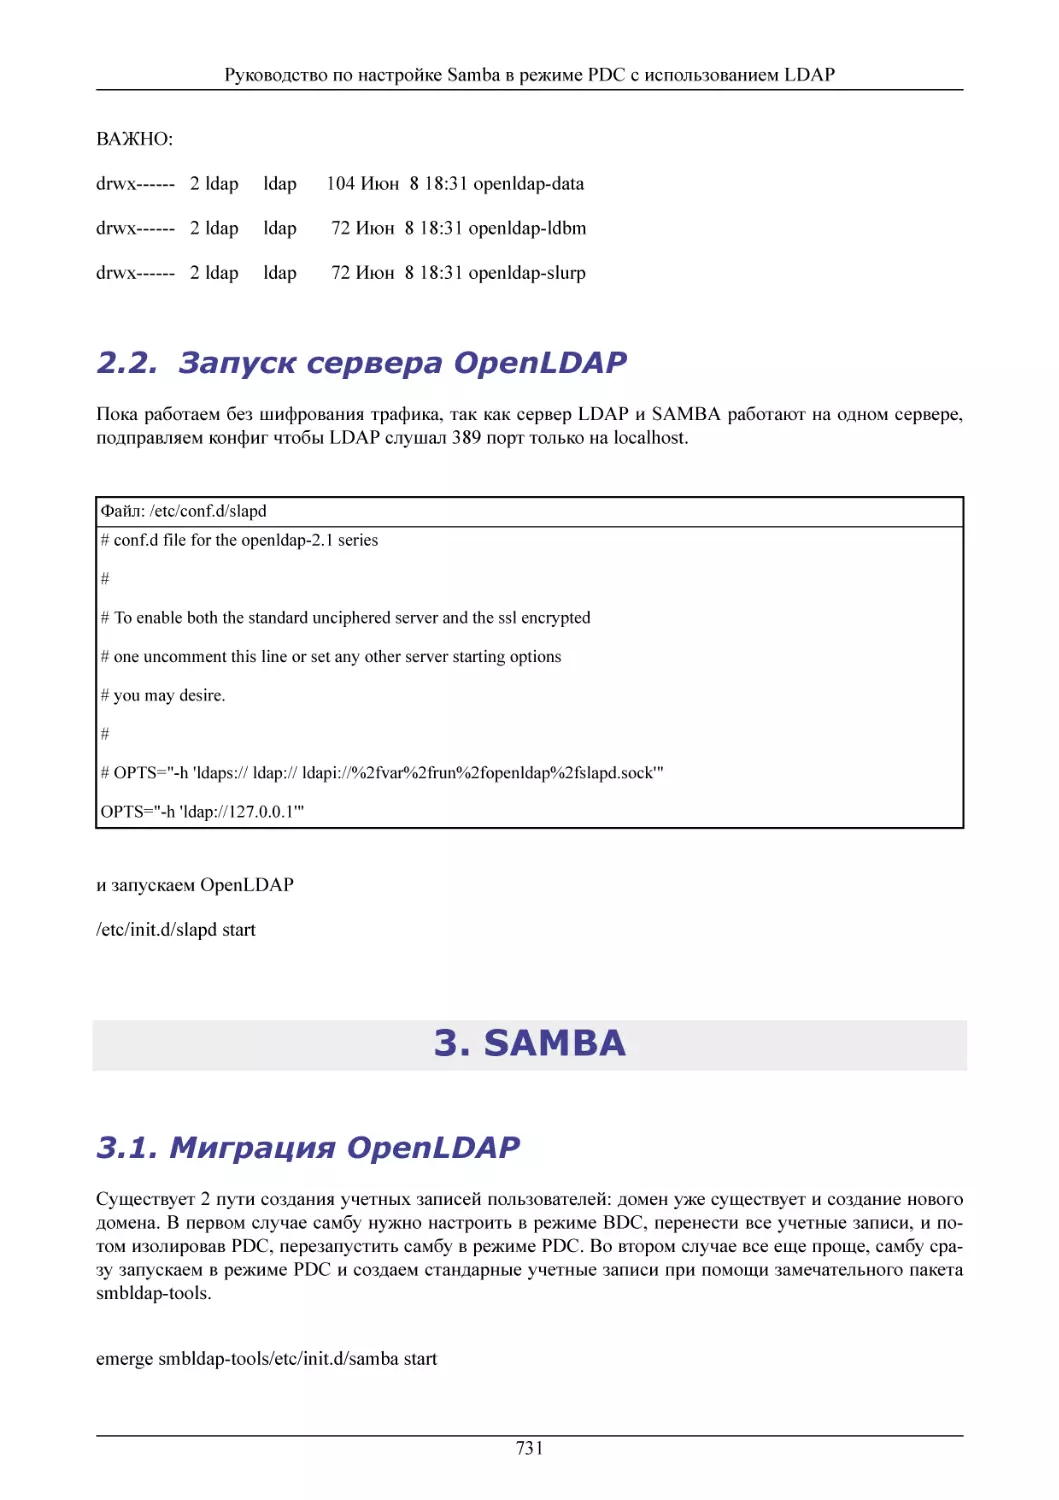  Запуск сервера OpenLDAP
SAMBA
Миграция OpenLDAP